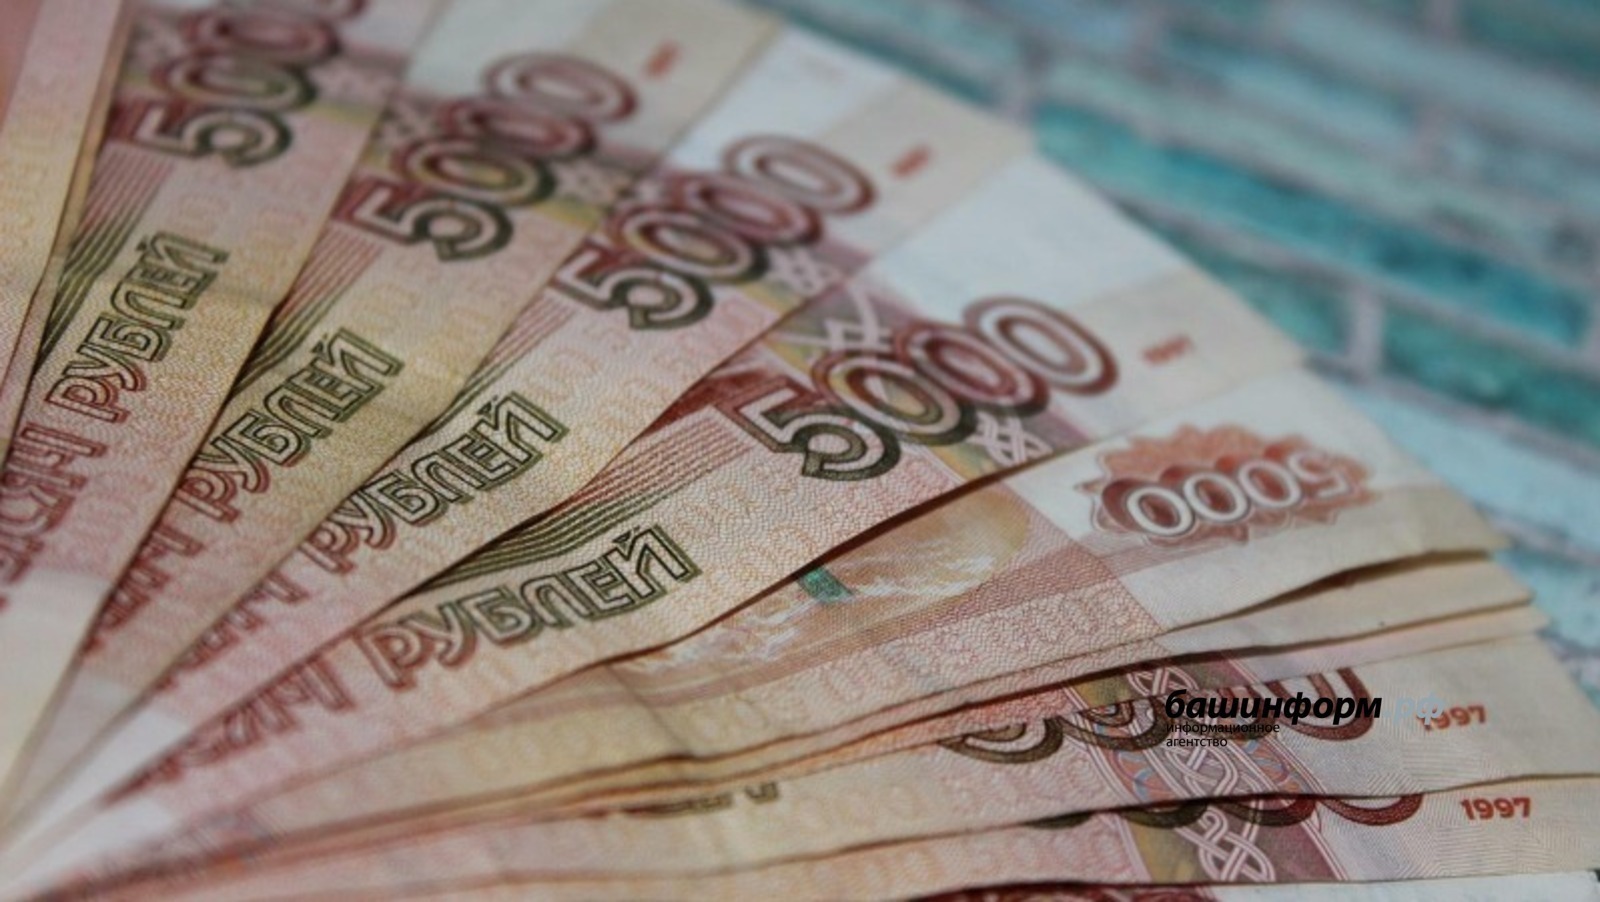 25 молодых педагогов Башкирии получат гранты по 40 тысяч рублей